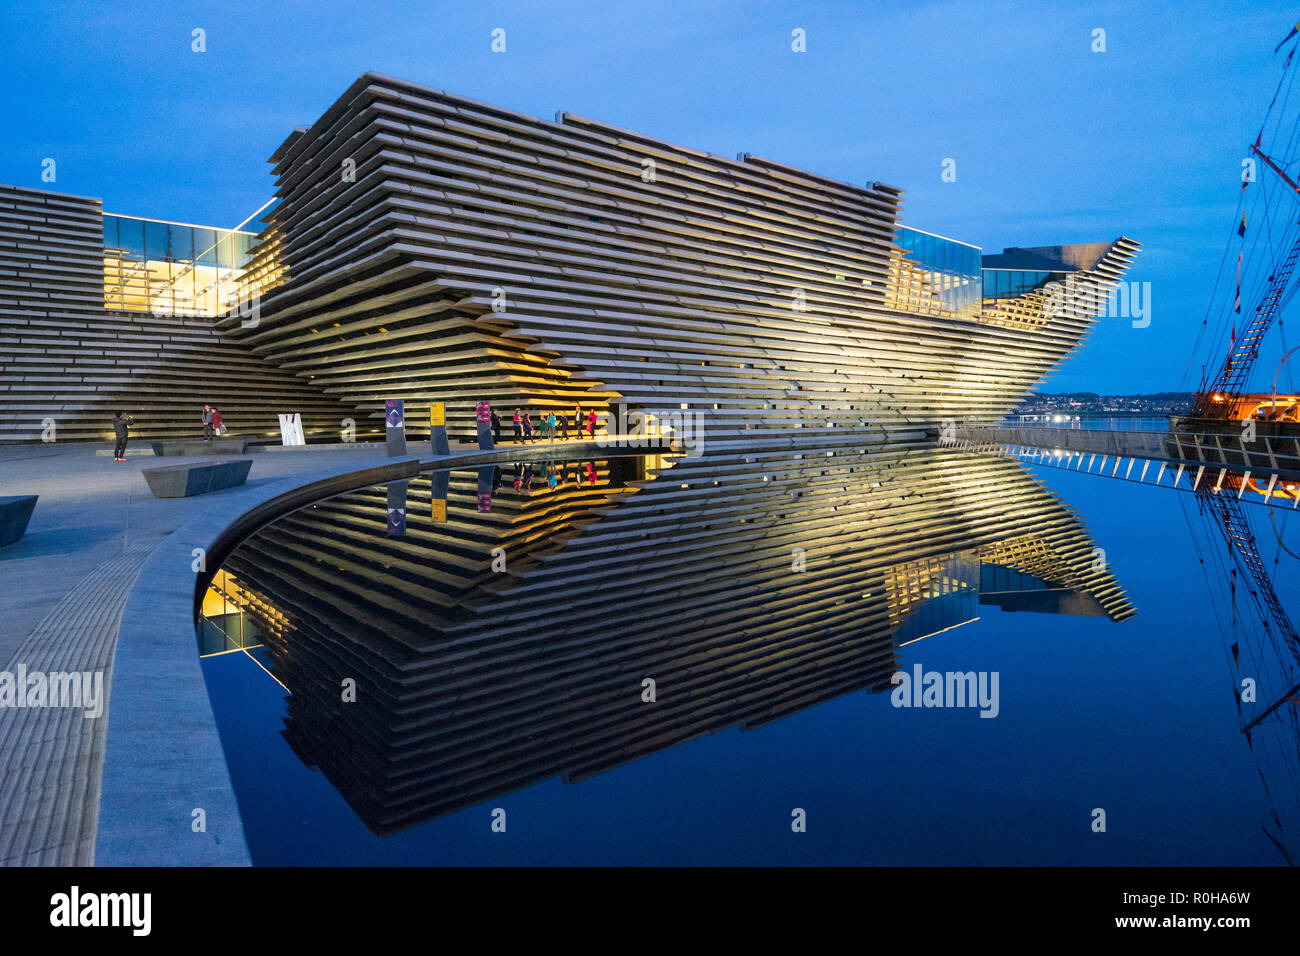 Außenansicht des neuen V&A Museum in Dundee, Schottland, Großbritannien. Architekten Kengo Kuma. Stockfoto